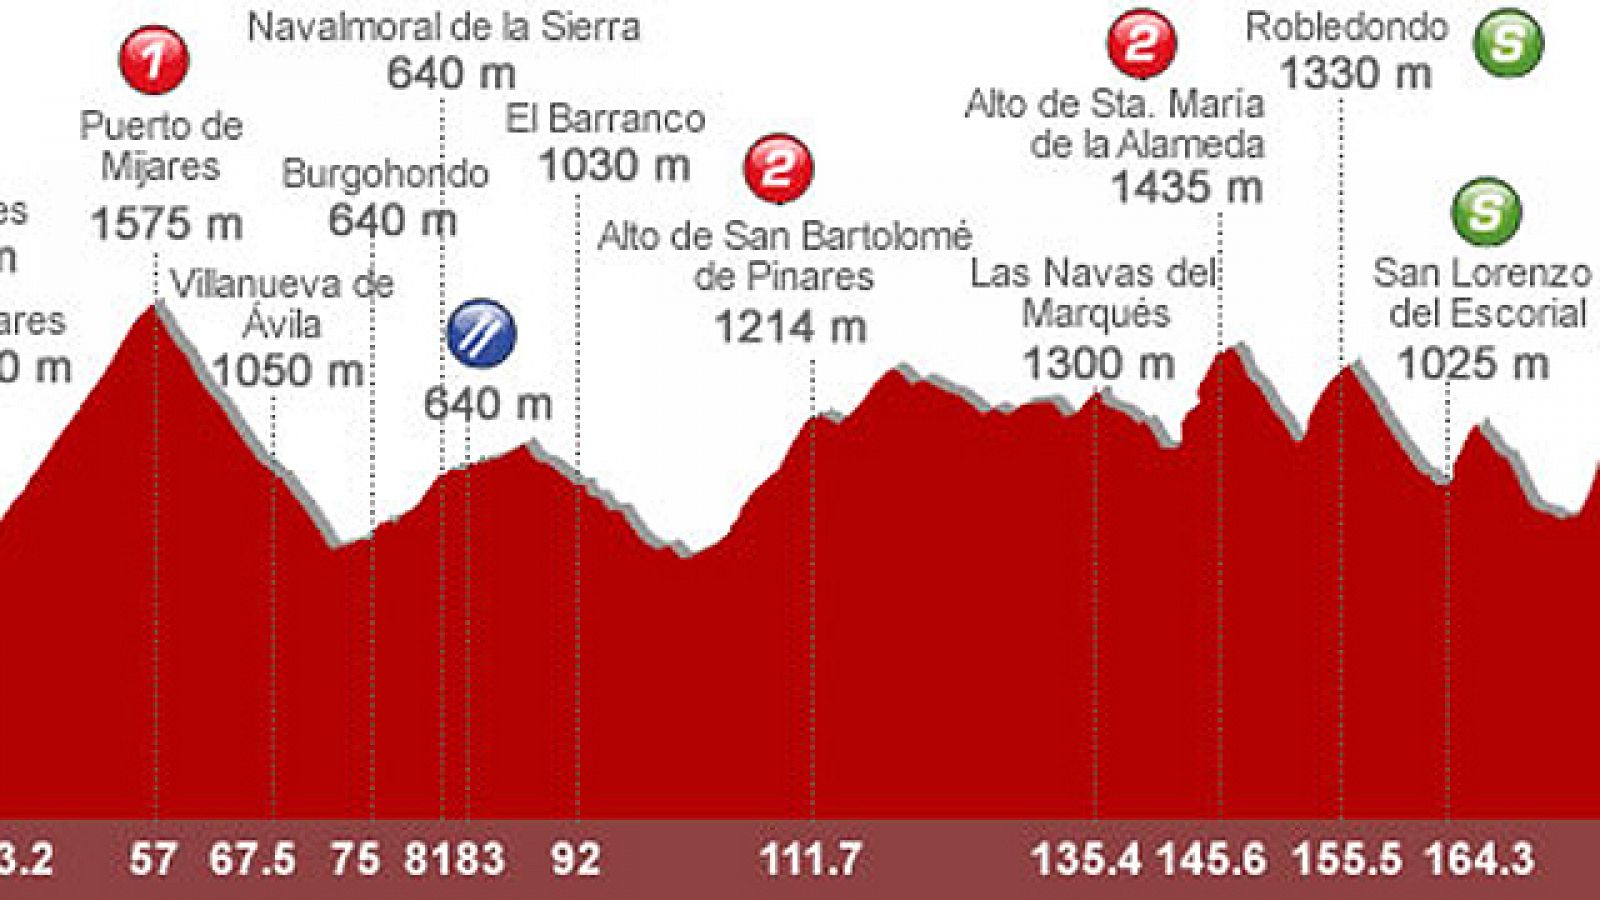 Lastras analiza la 8ª etapa: Talavera de la Reina - San Lorenzo de El Escorial